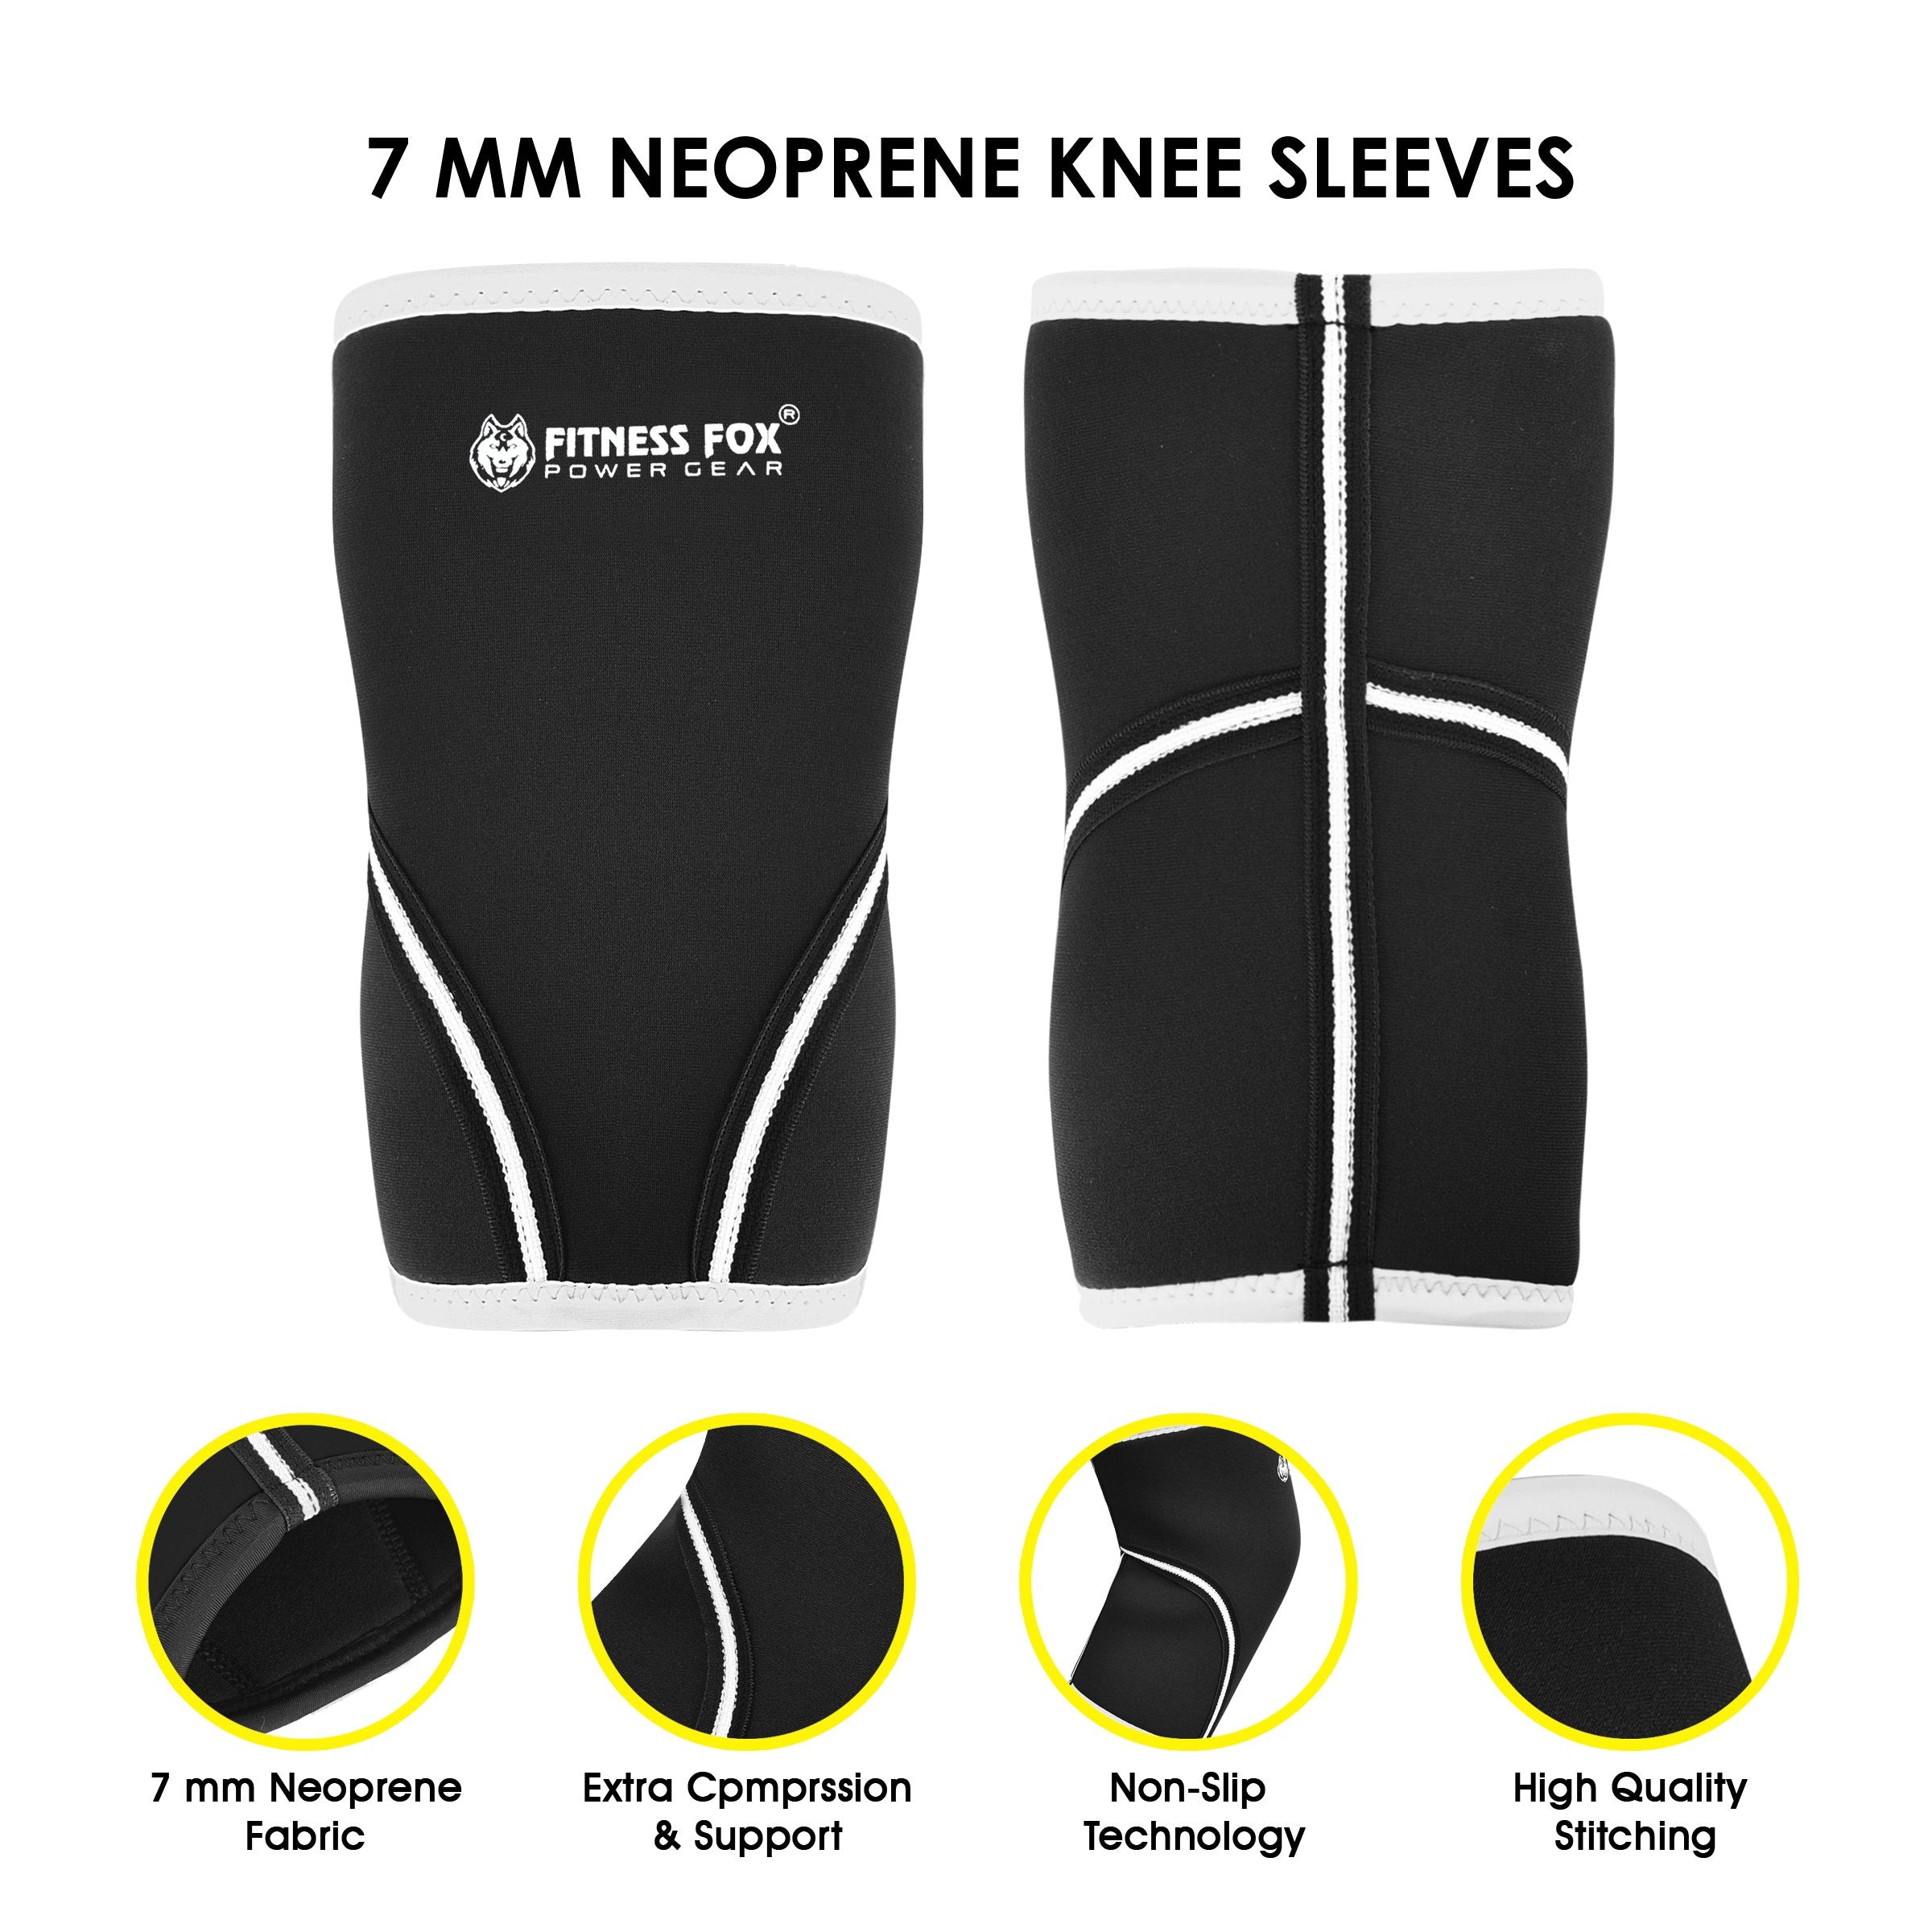 FITNESSFOX 7MM NEOPRENE Knee Sleeves Black/White